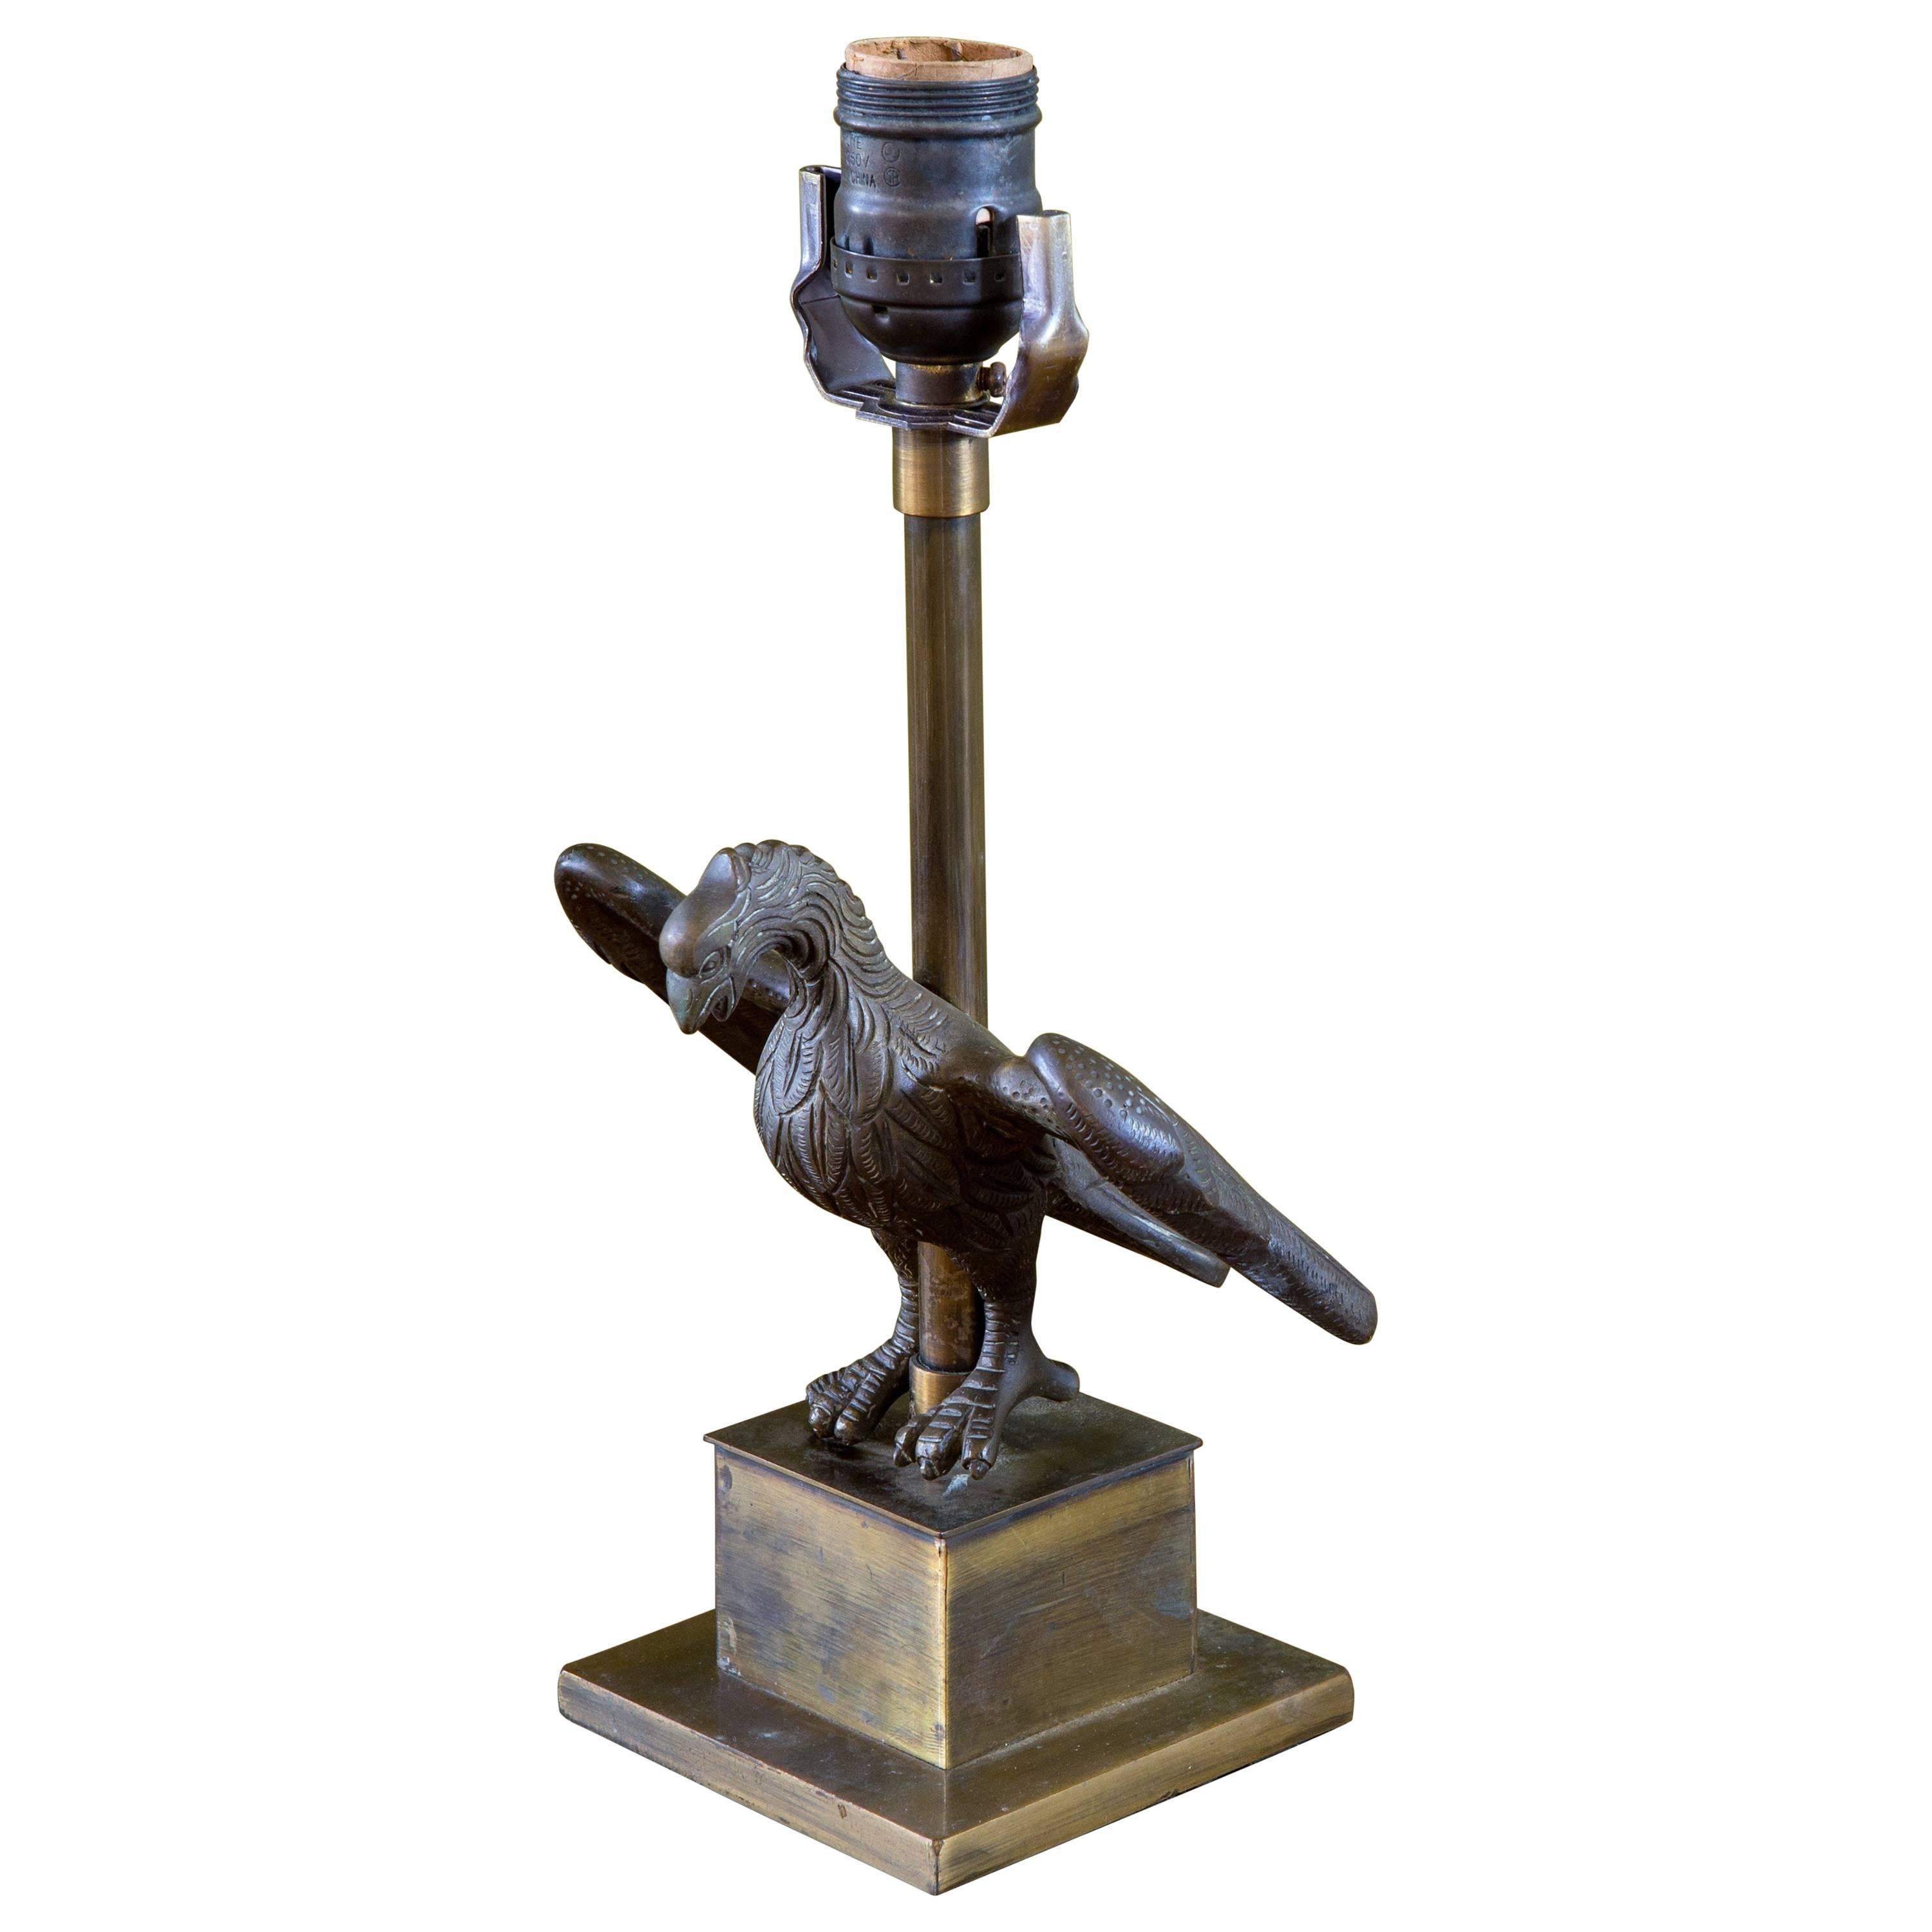 Unusaul Bronze Eagle Table Lamp, circa 1930s